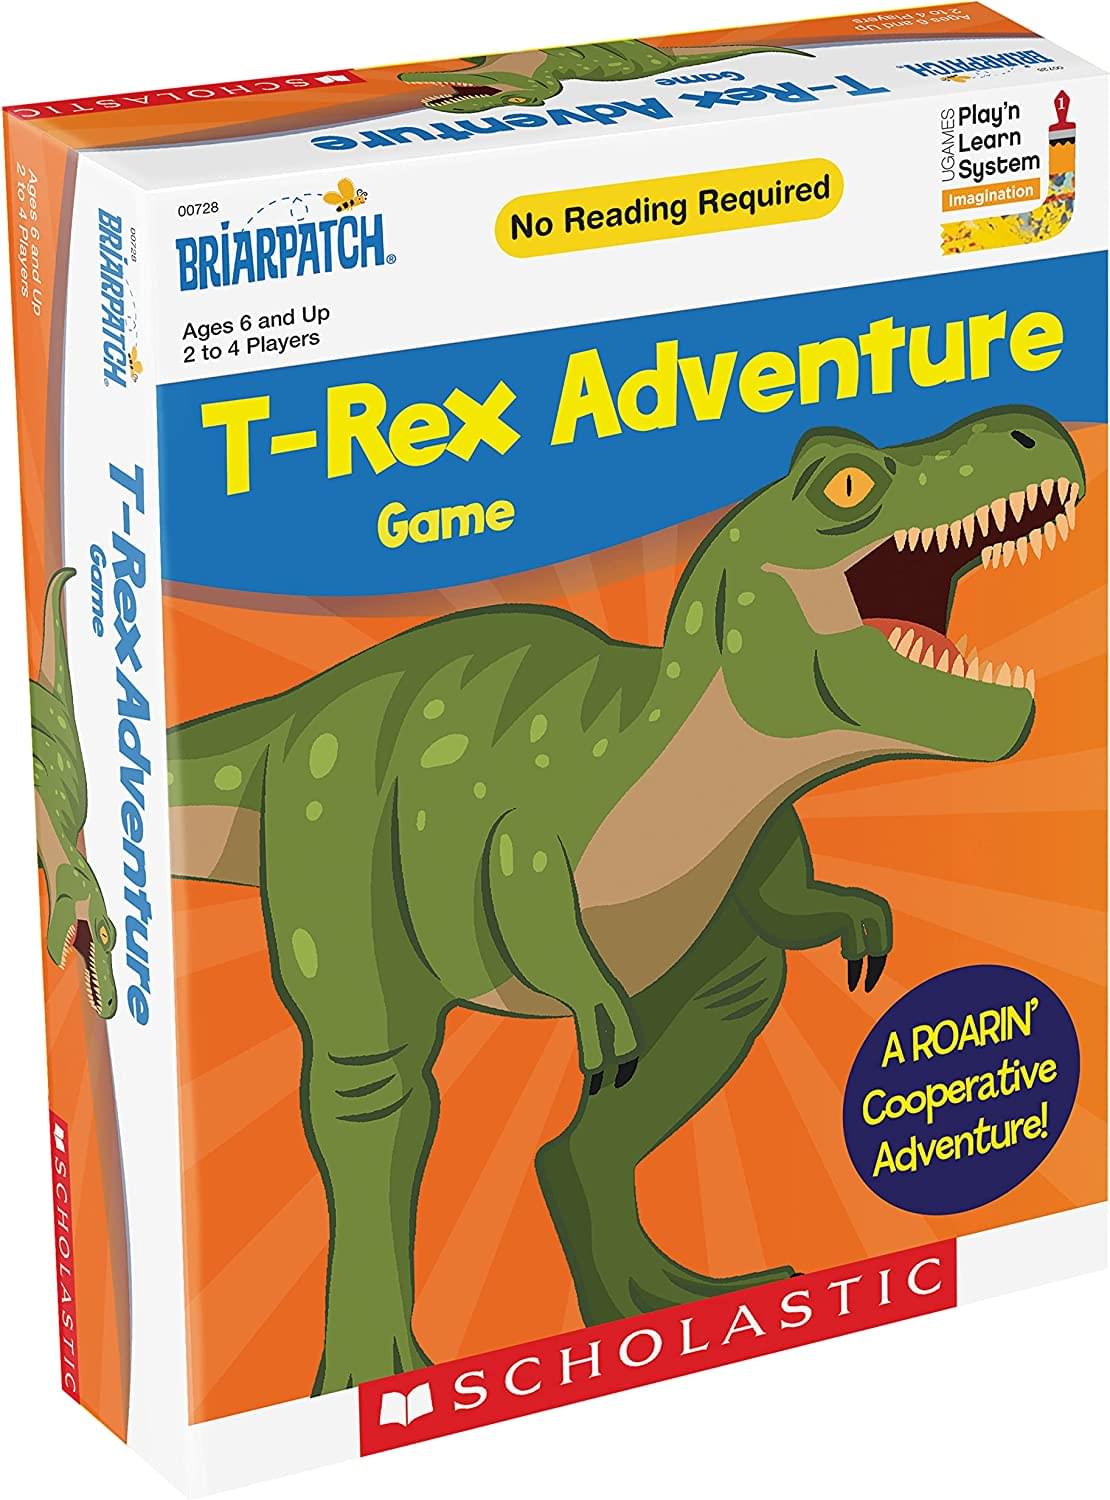 Amazing Dino T-Rex Runner by Mario Kart Go